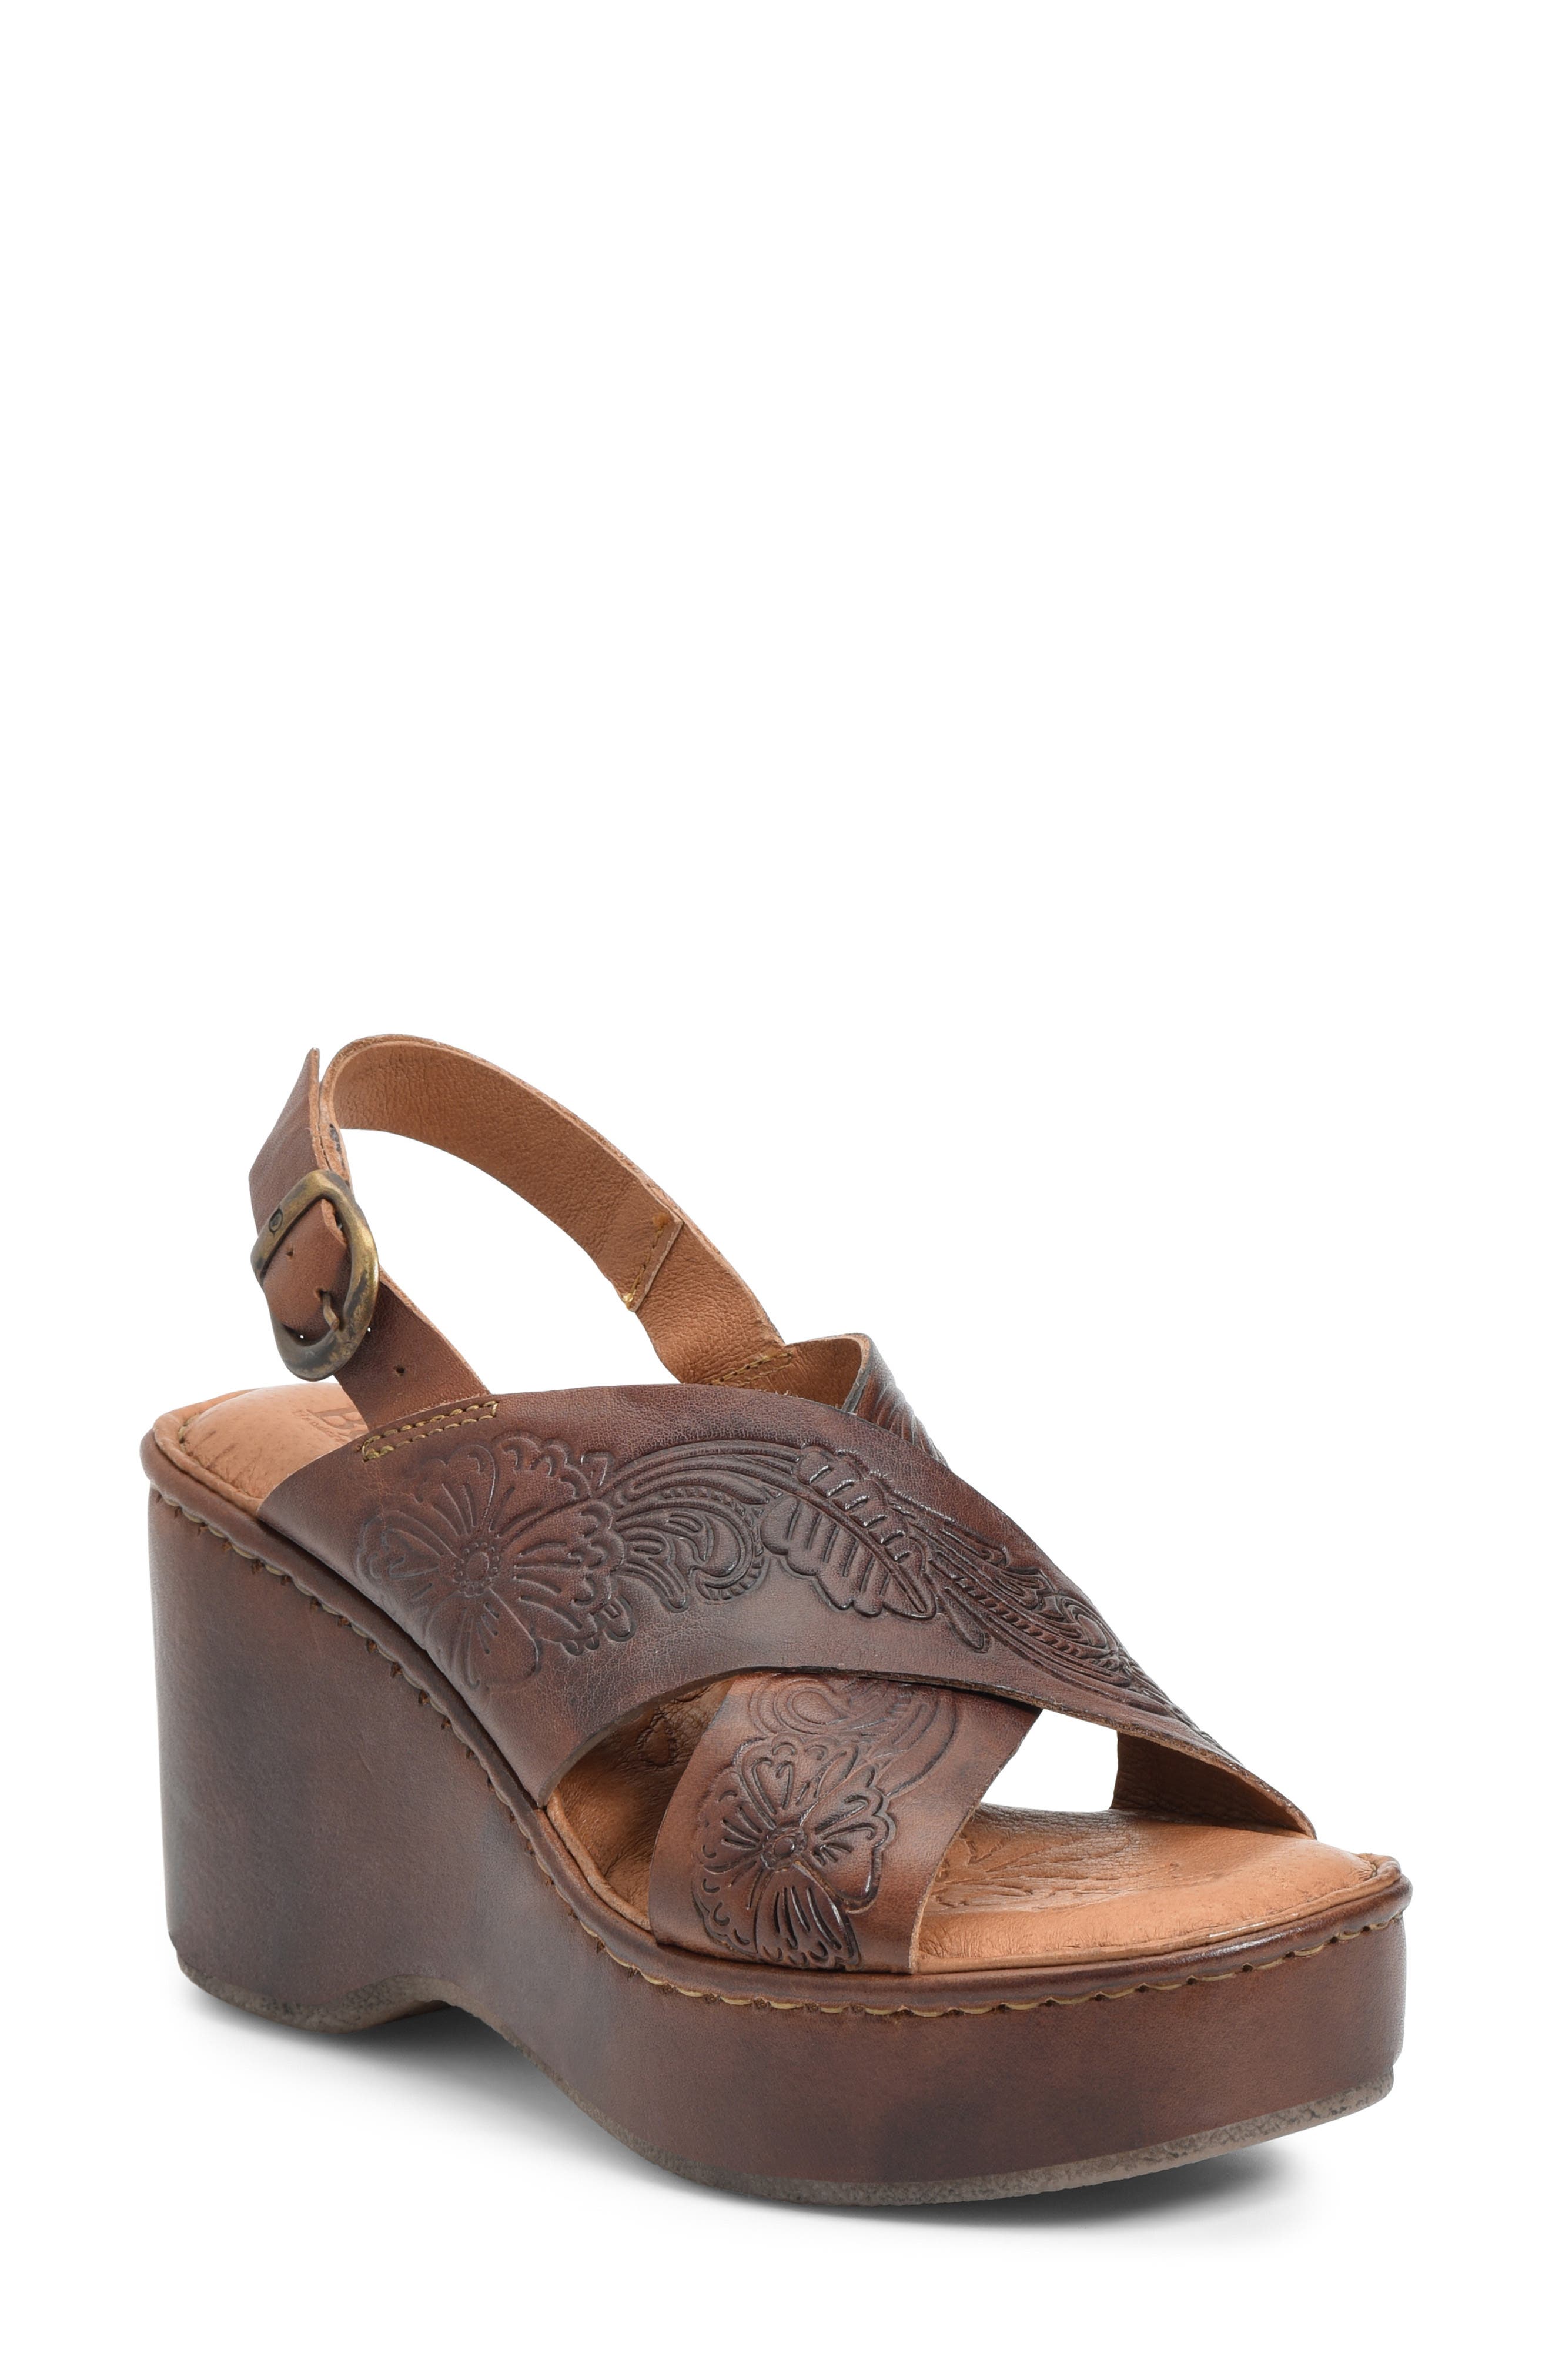 milo leather sport sandal